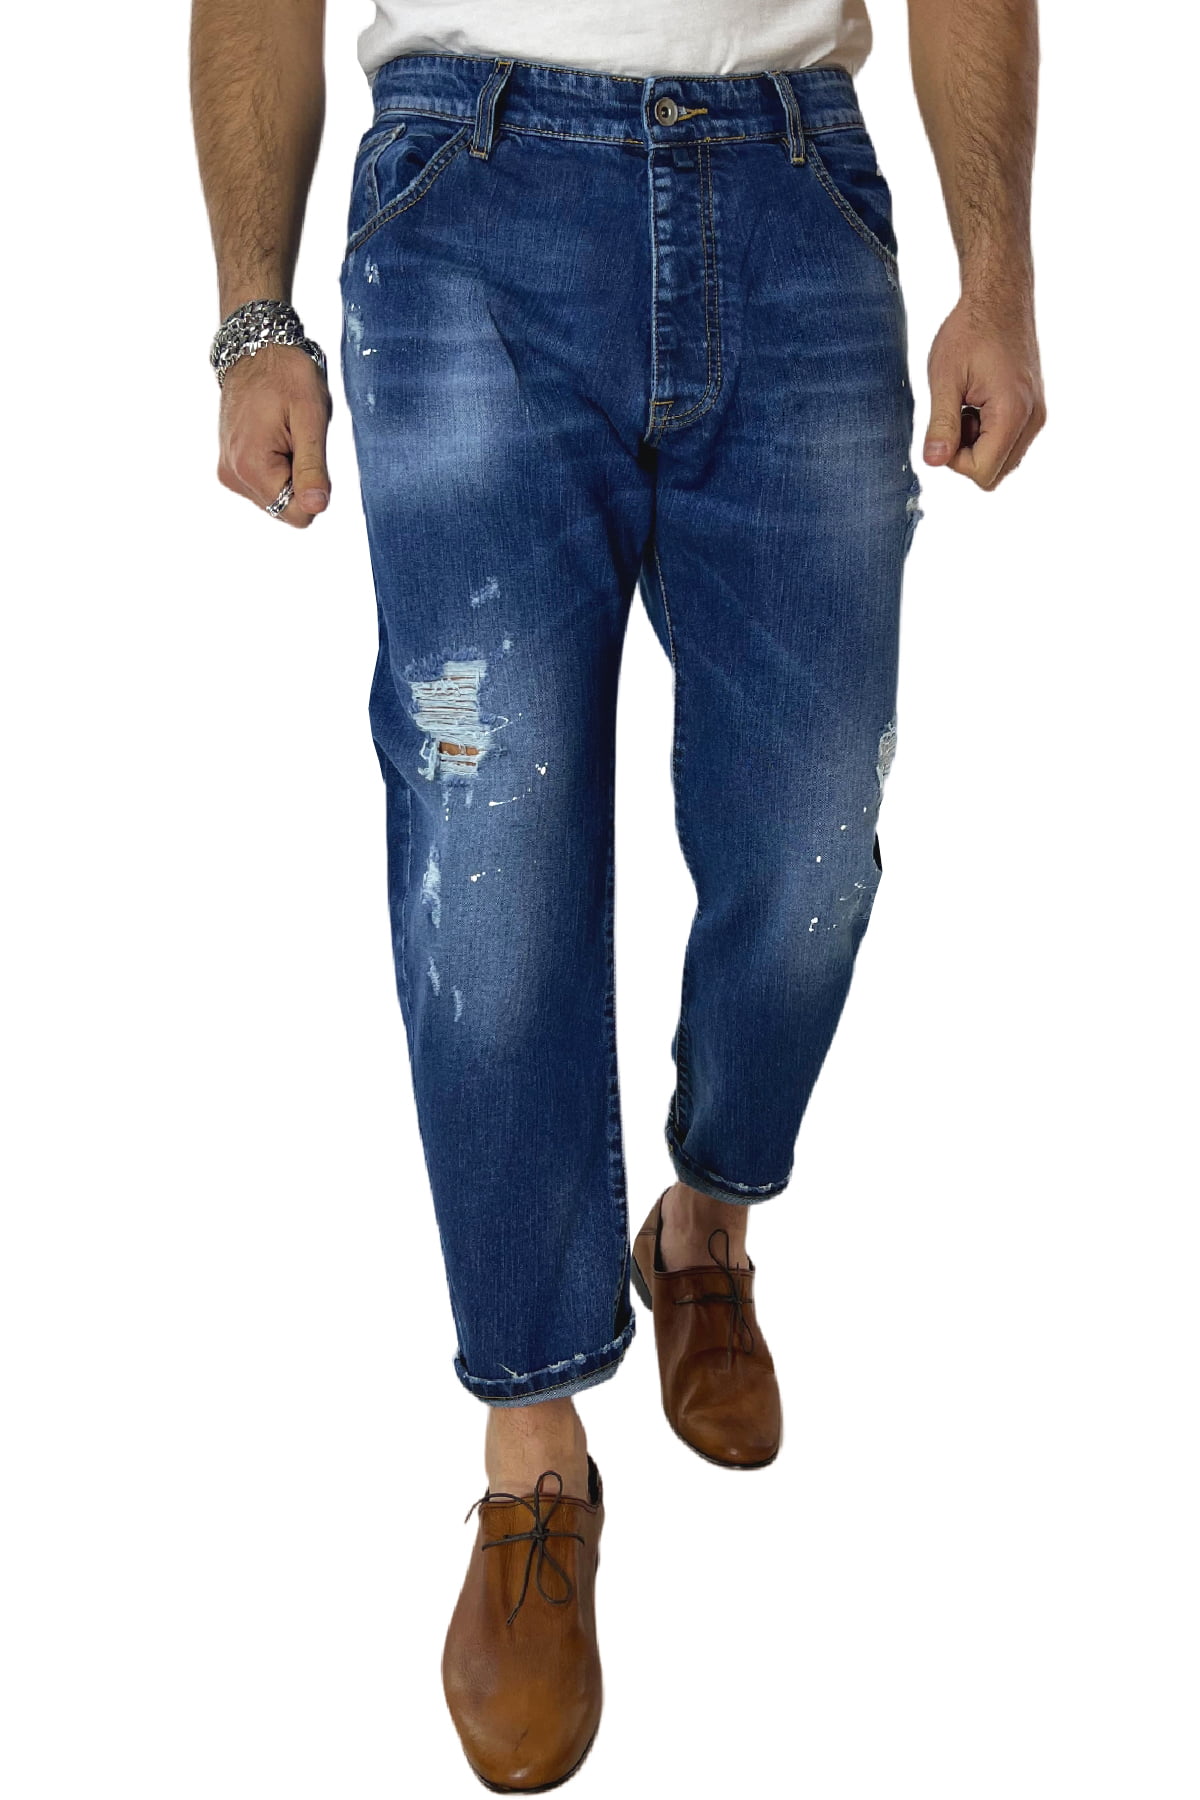 Jeans strappati da uomo con sfumature bianche e schizzi di pittura regular fit made in italy